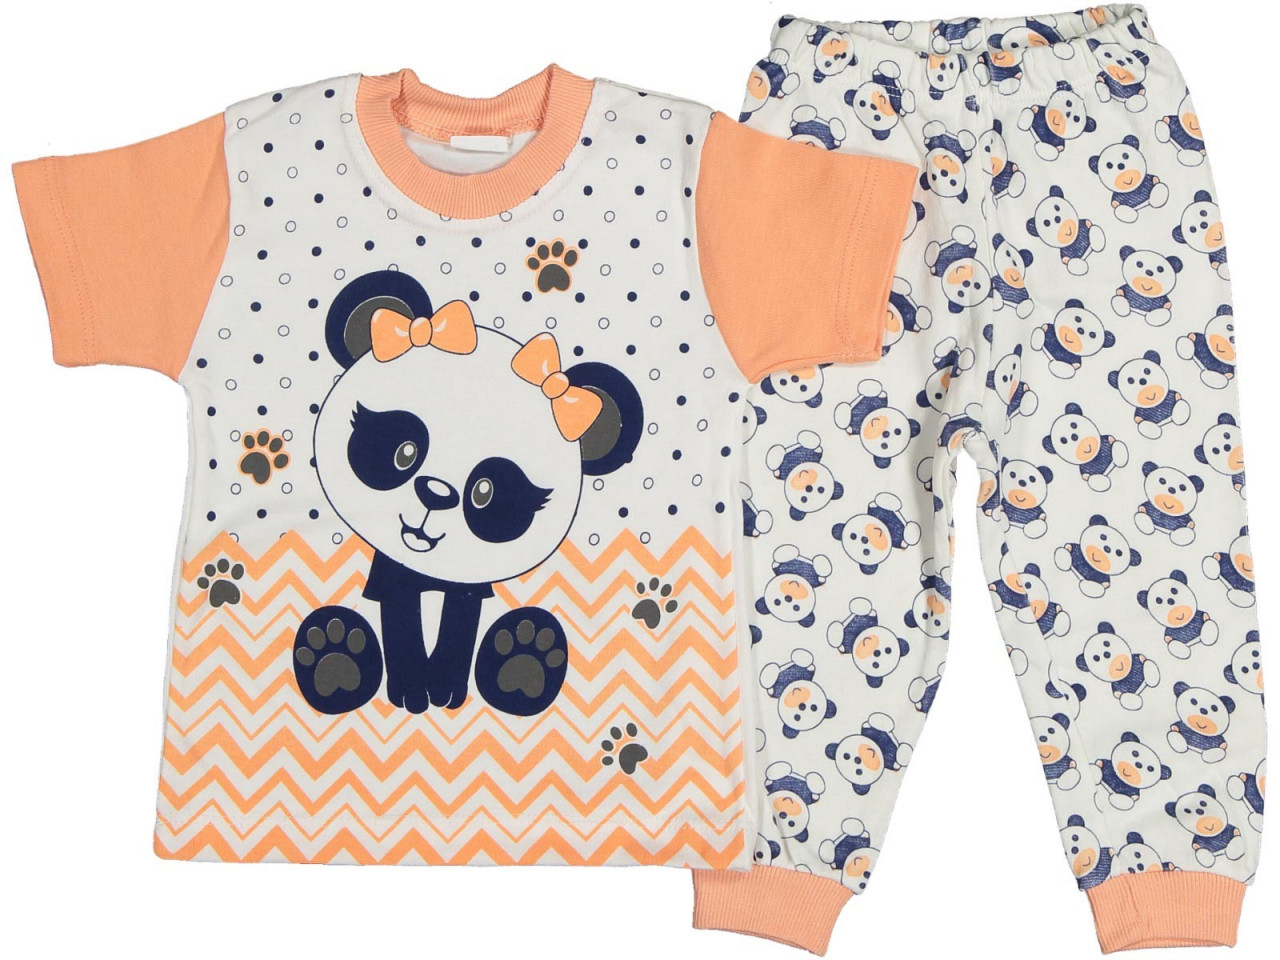 Pijama Ursulet Panda cu fundita pentru fete, coray, 1-3 ani